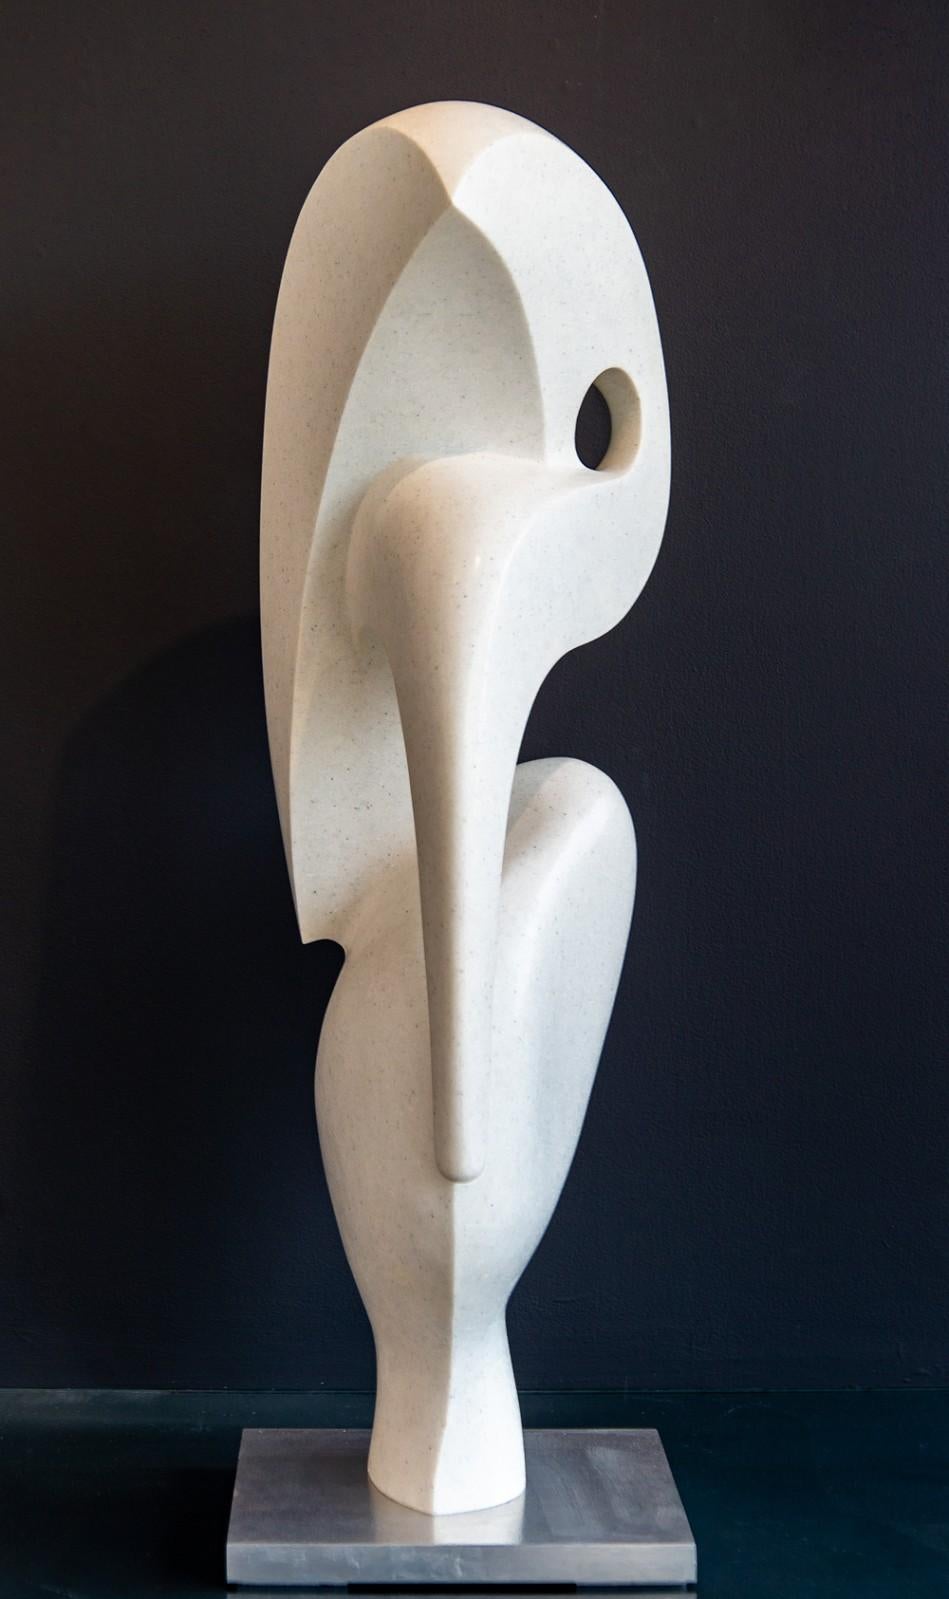 Abstract Sculpture Jeremy Guy - Heron 5/50 - sculpture figurative en marbre blanc lisse, polie et abstraite